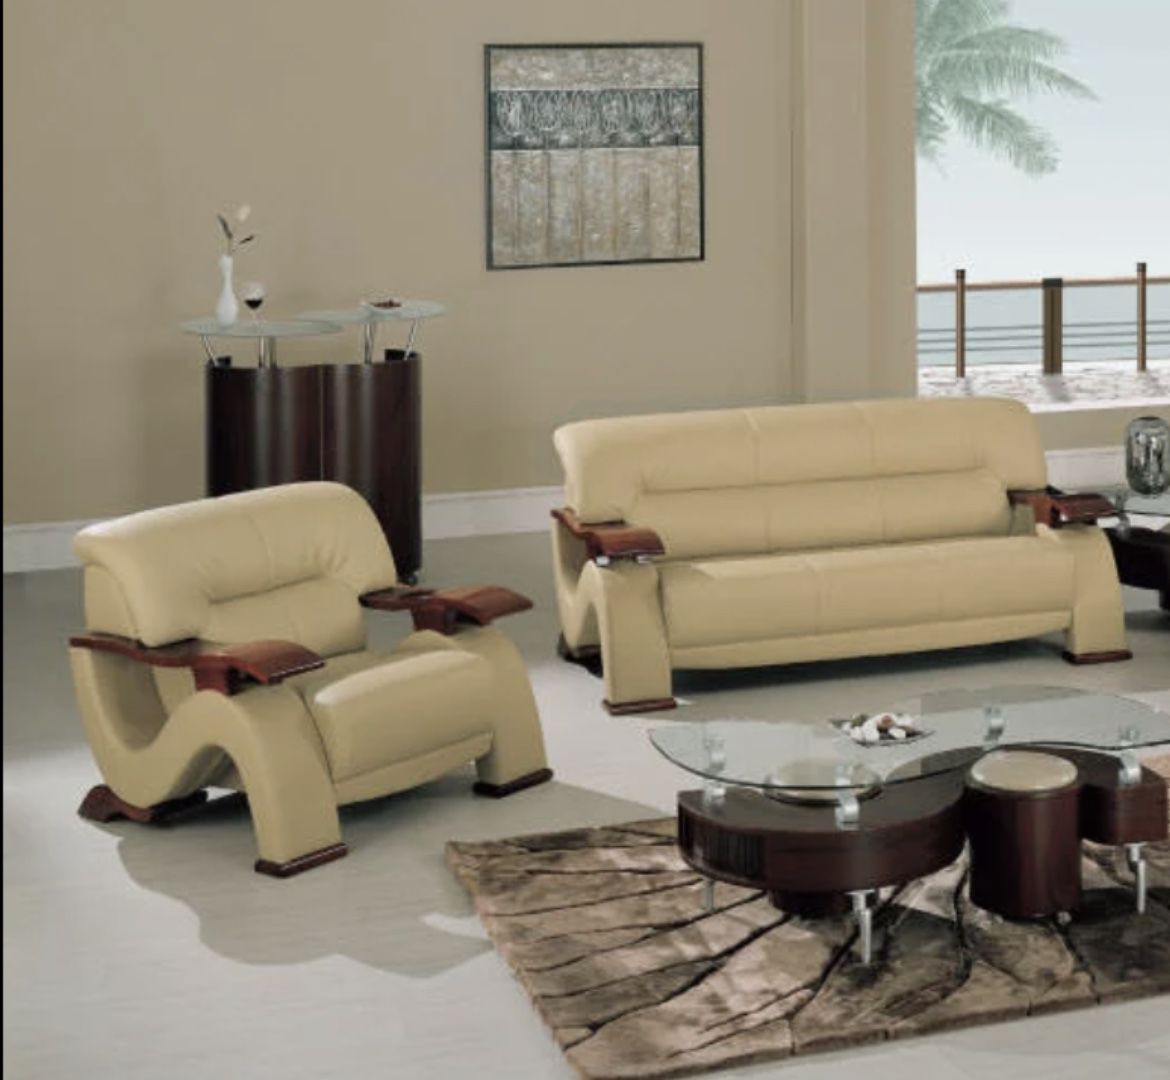 Living Room Furnitures